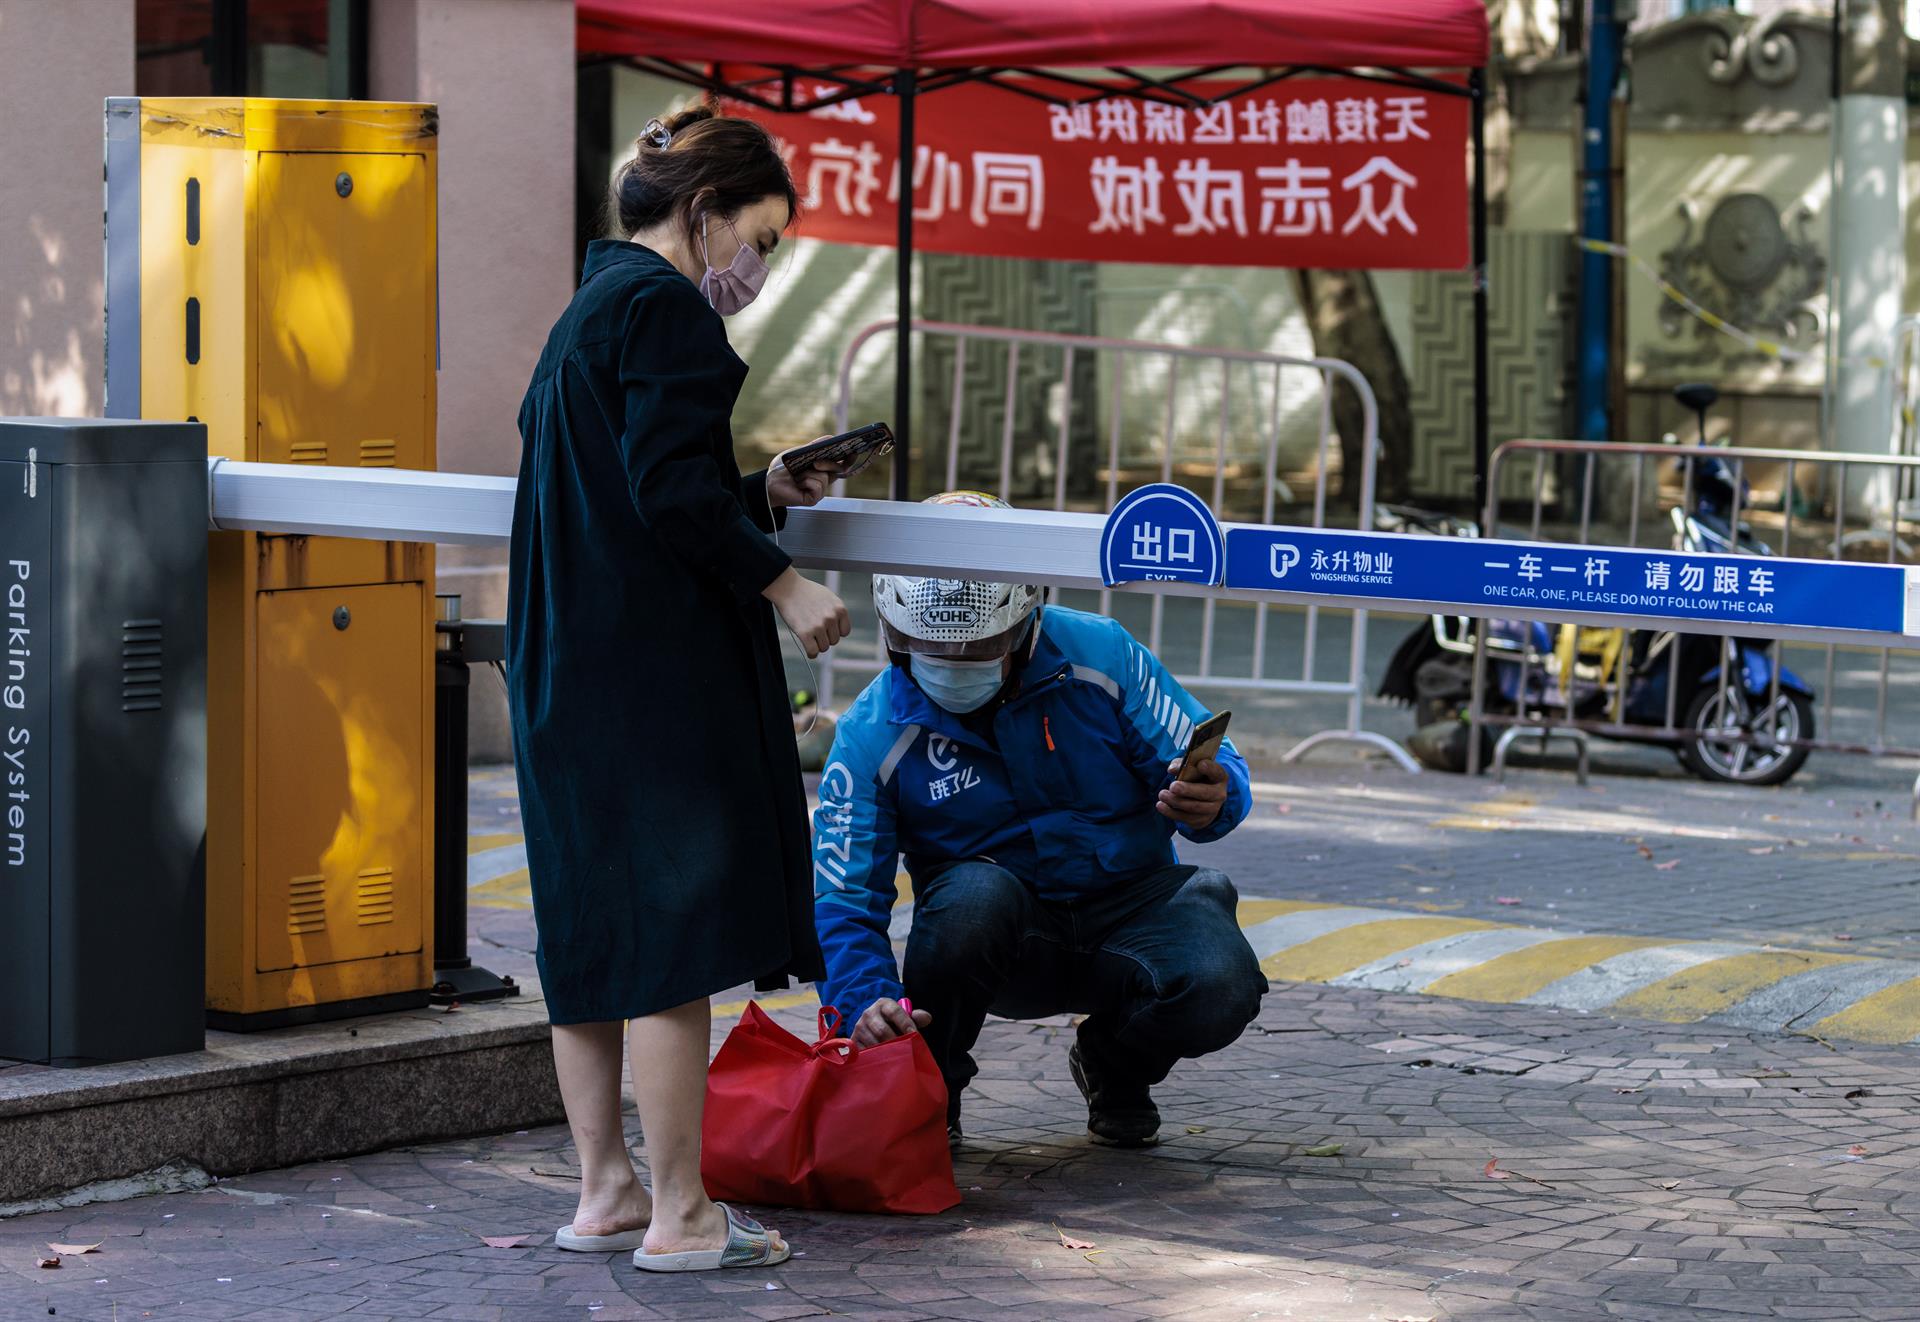 Xangai admet les primeres morts per covid des de l'inici del confinament